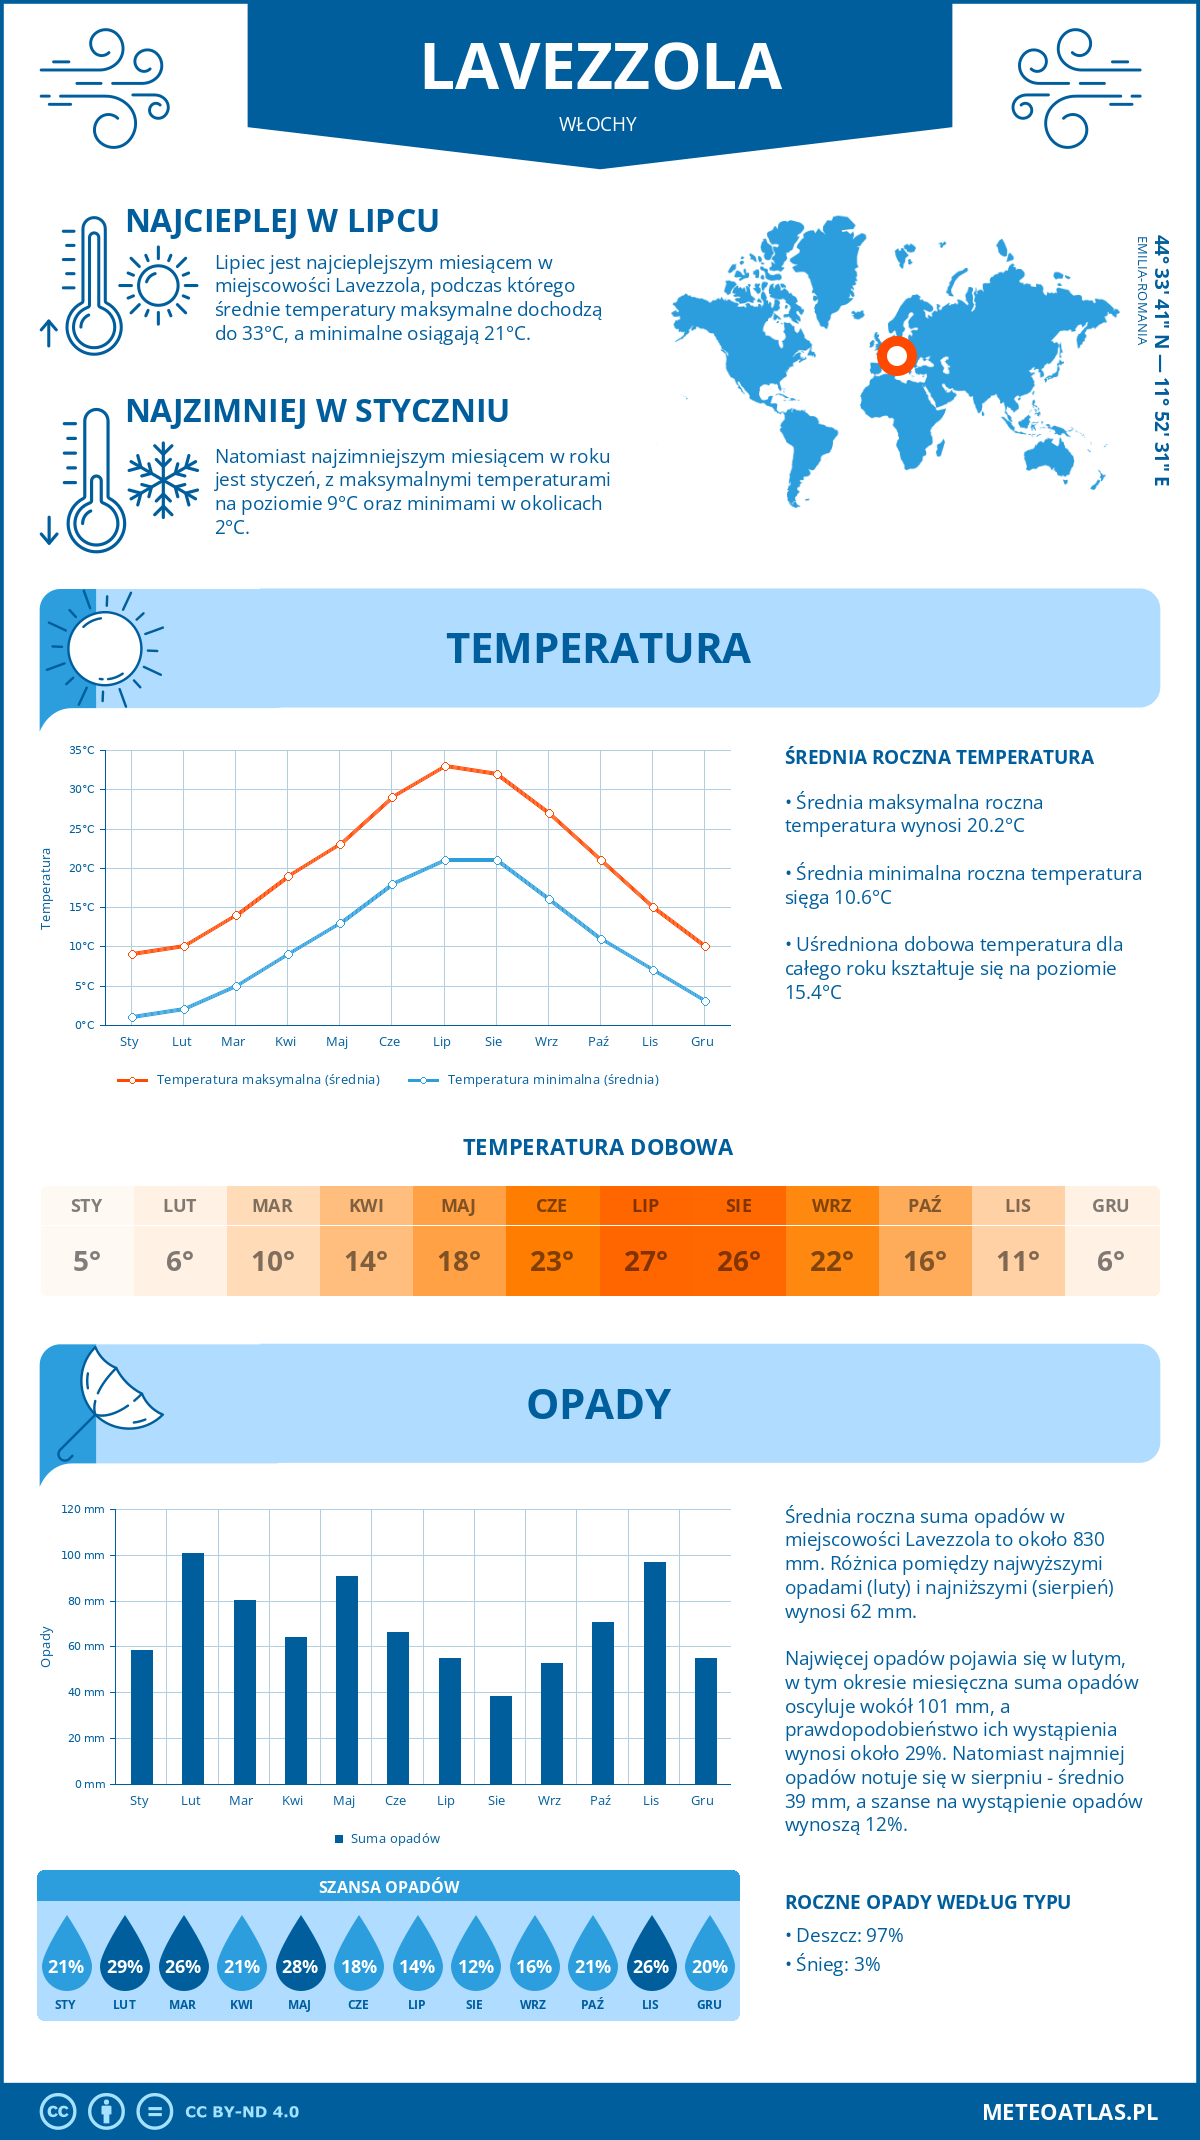 Pogoda Lavezzola (Włochy). Temperatura oraz opady.